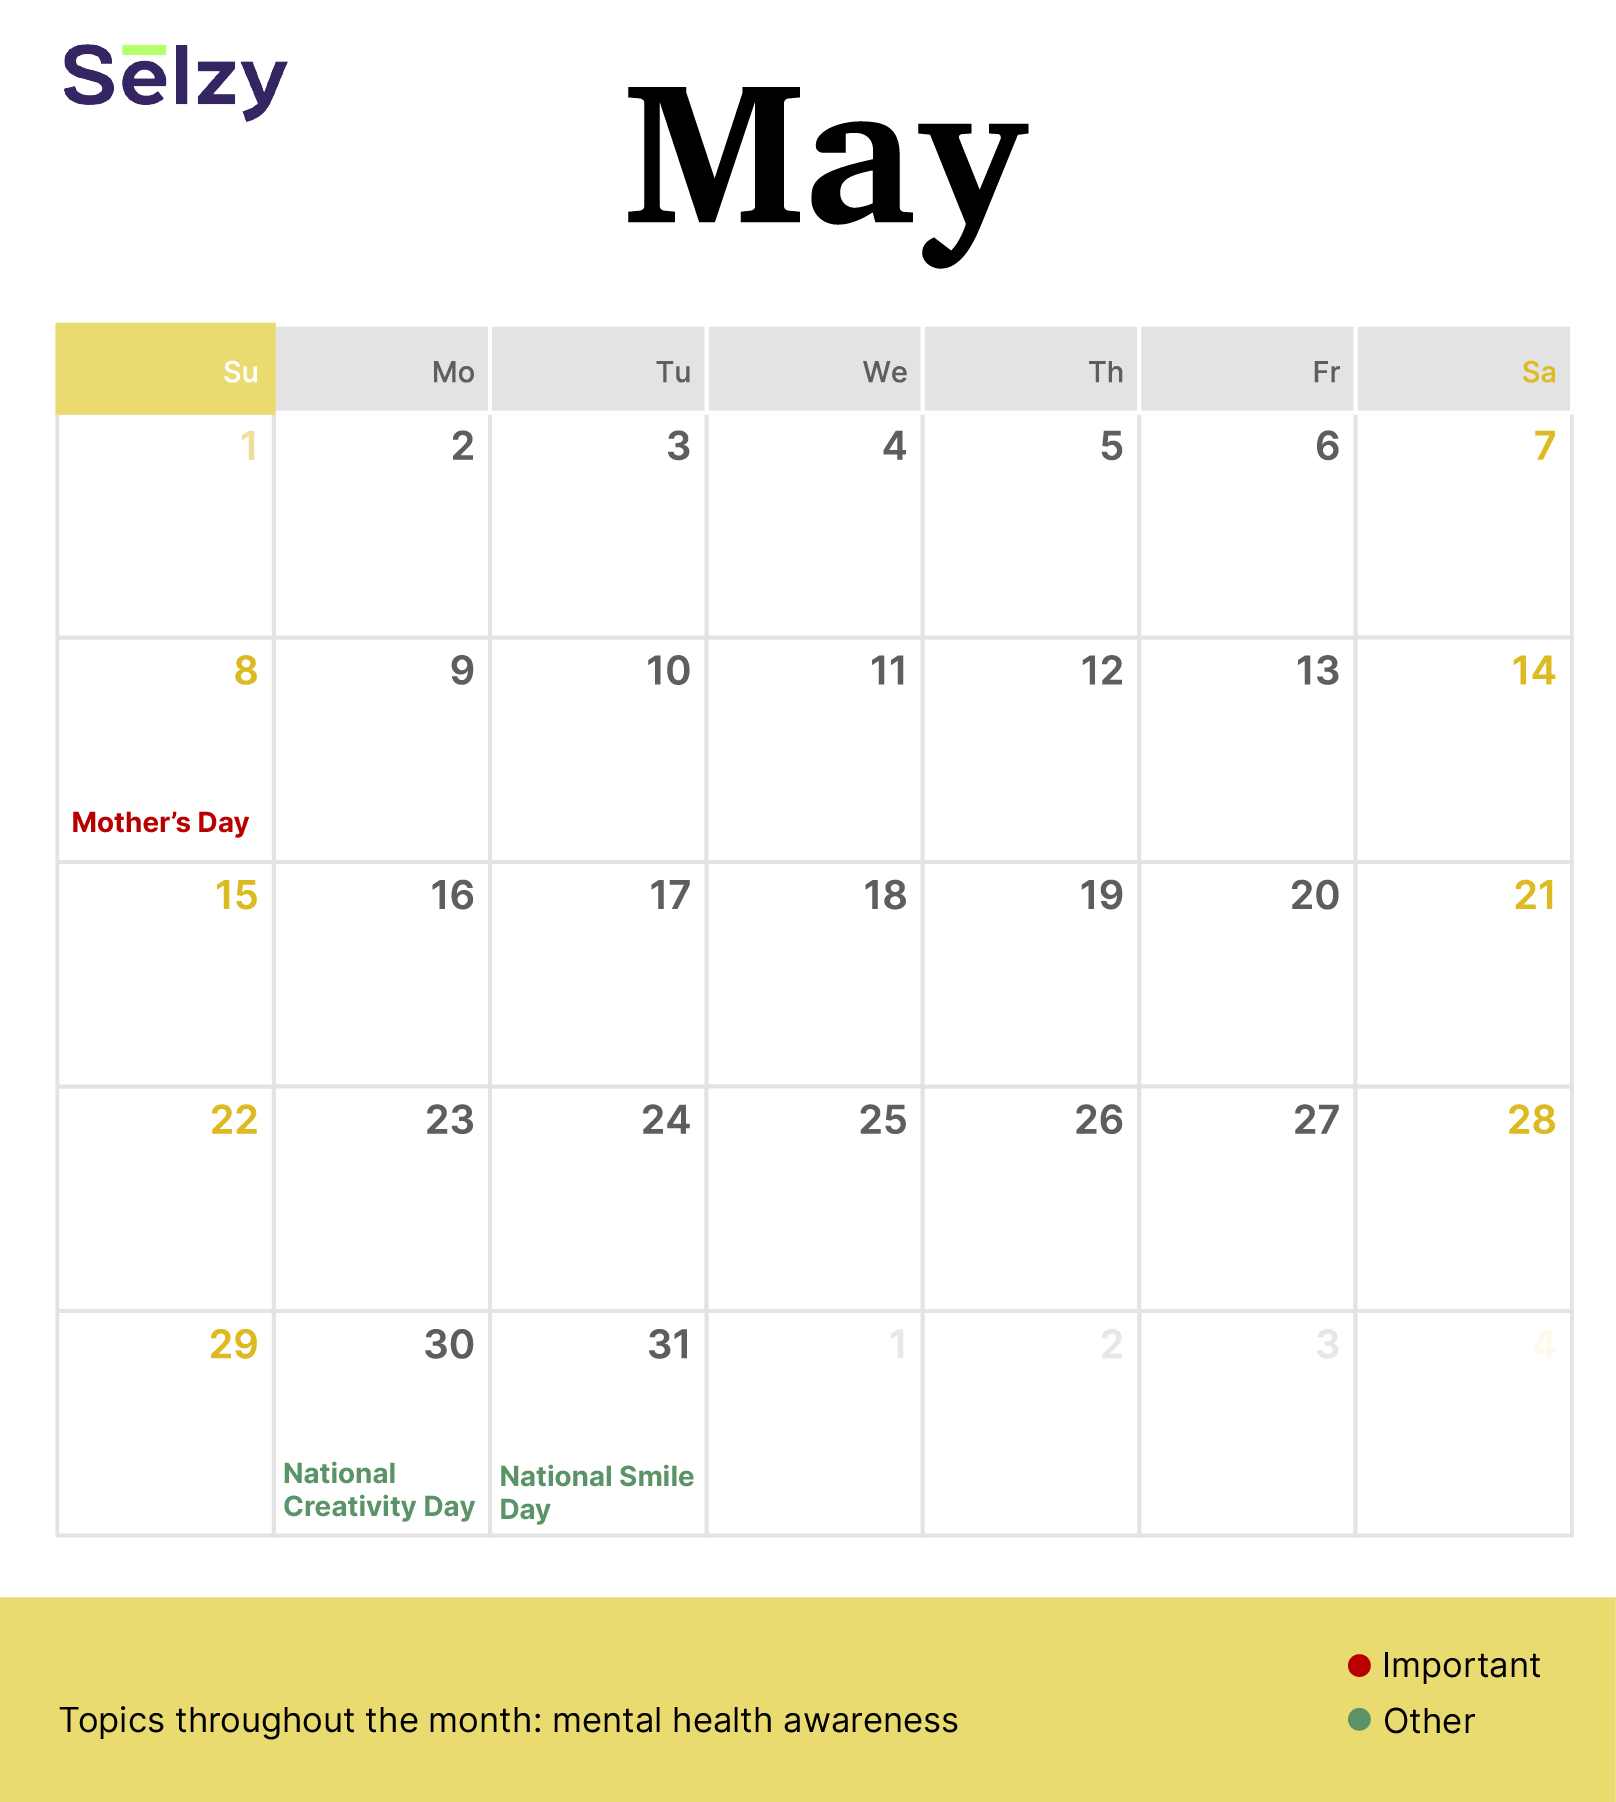 Holiday Marketing Calendar – May